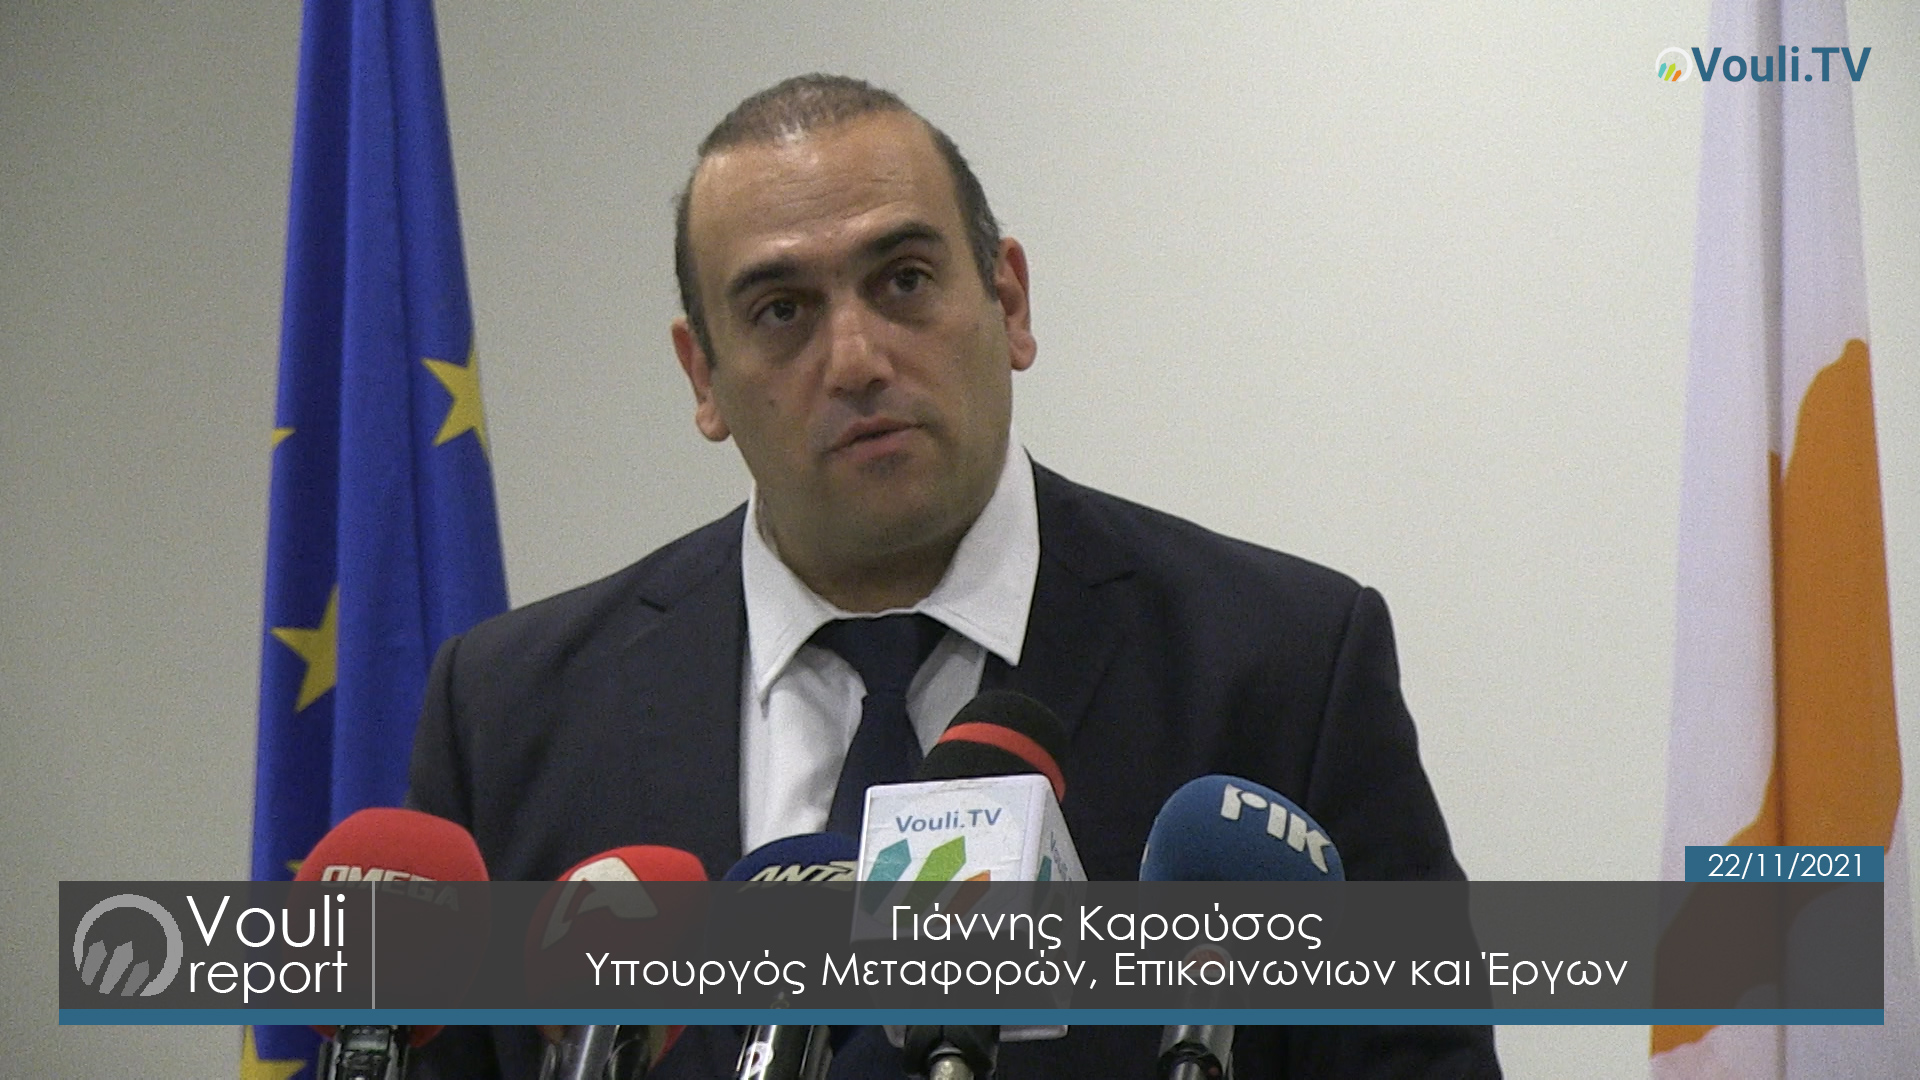 Γιάννης Καρούσος - Υπουργός Μεταφορών, Επικοινωνιών και Έργων | Επιτροπή Οικονομικών 22/11/2021